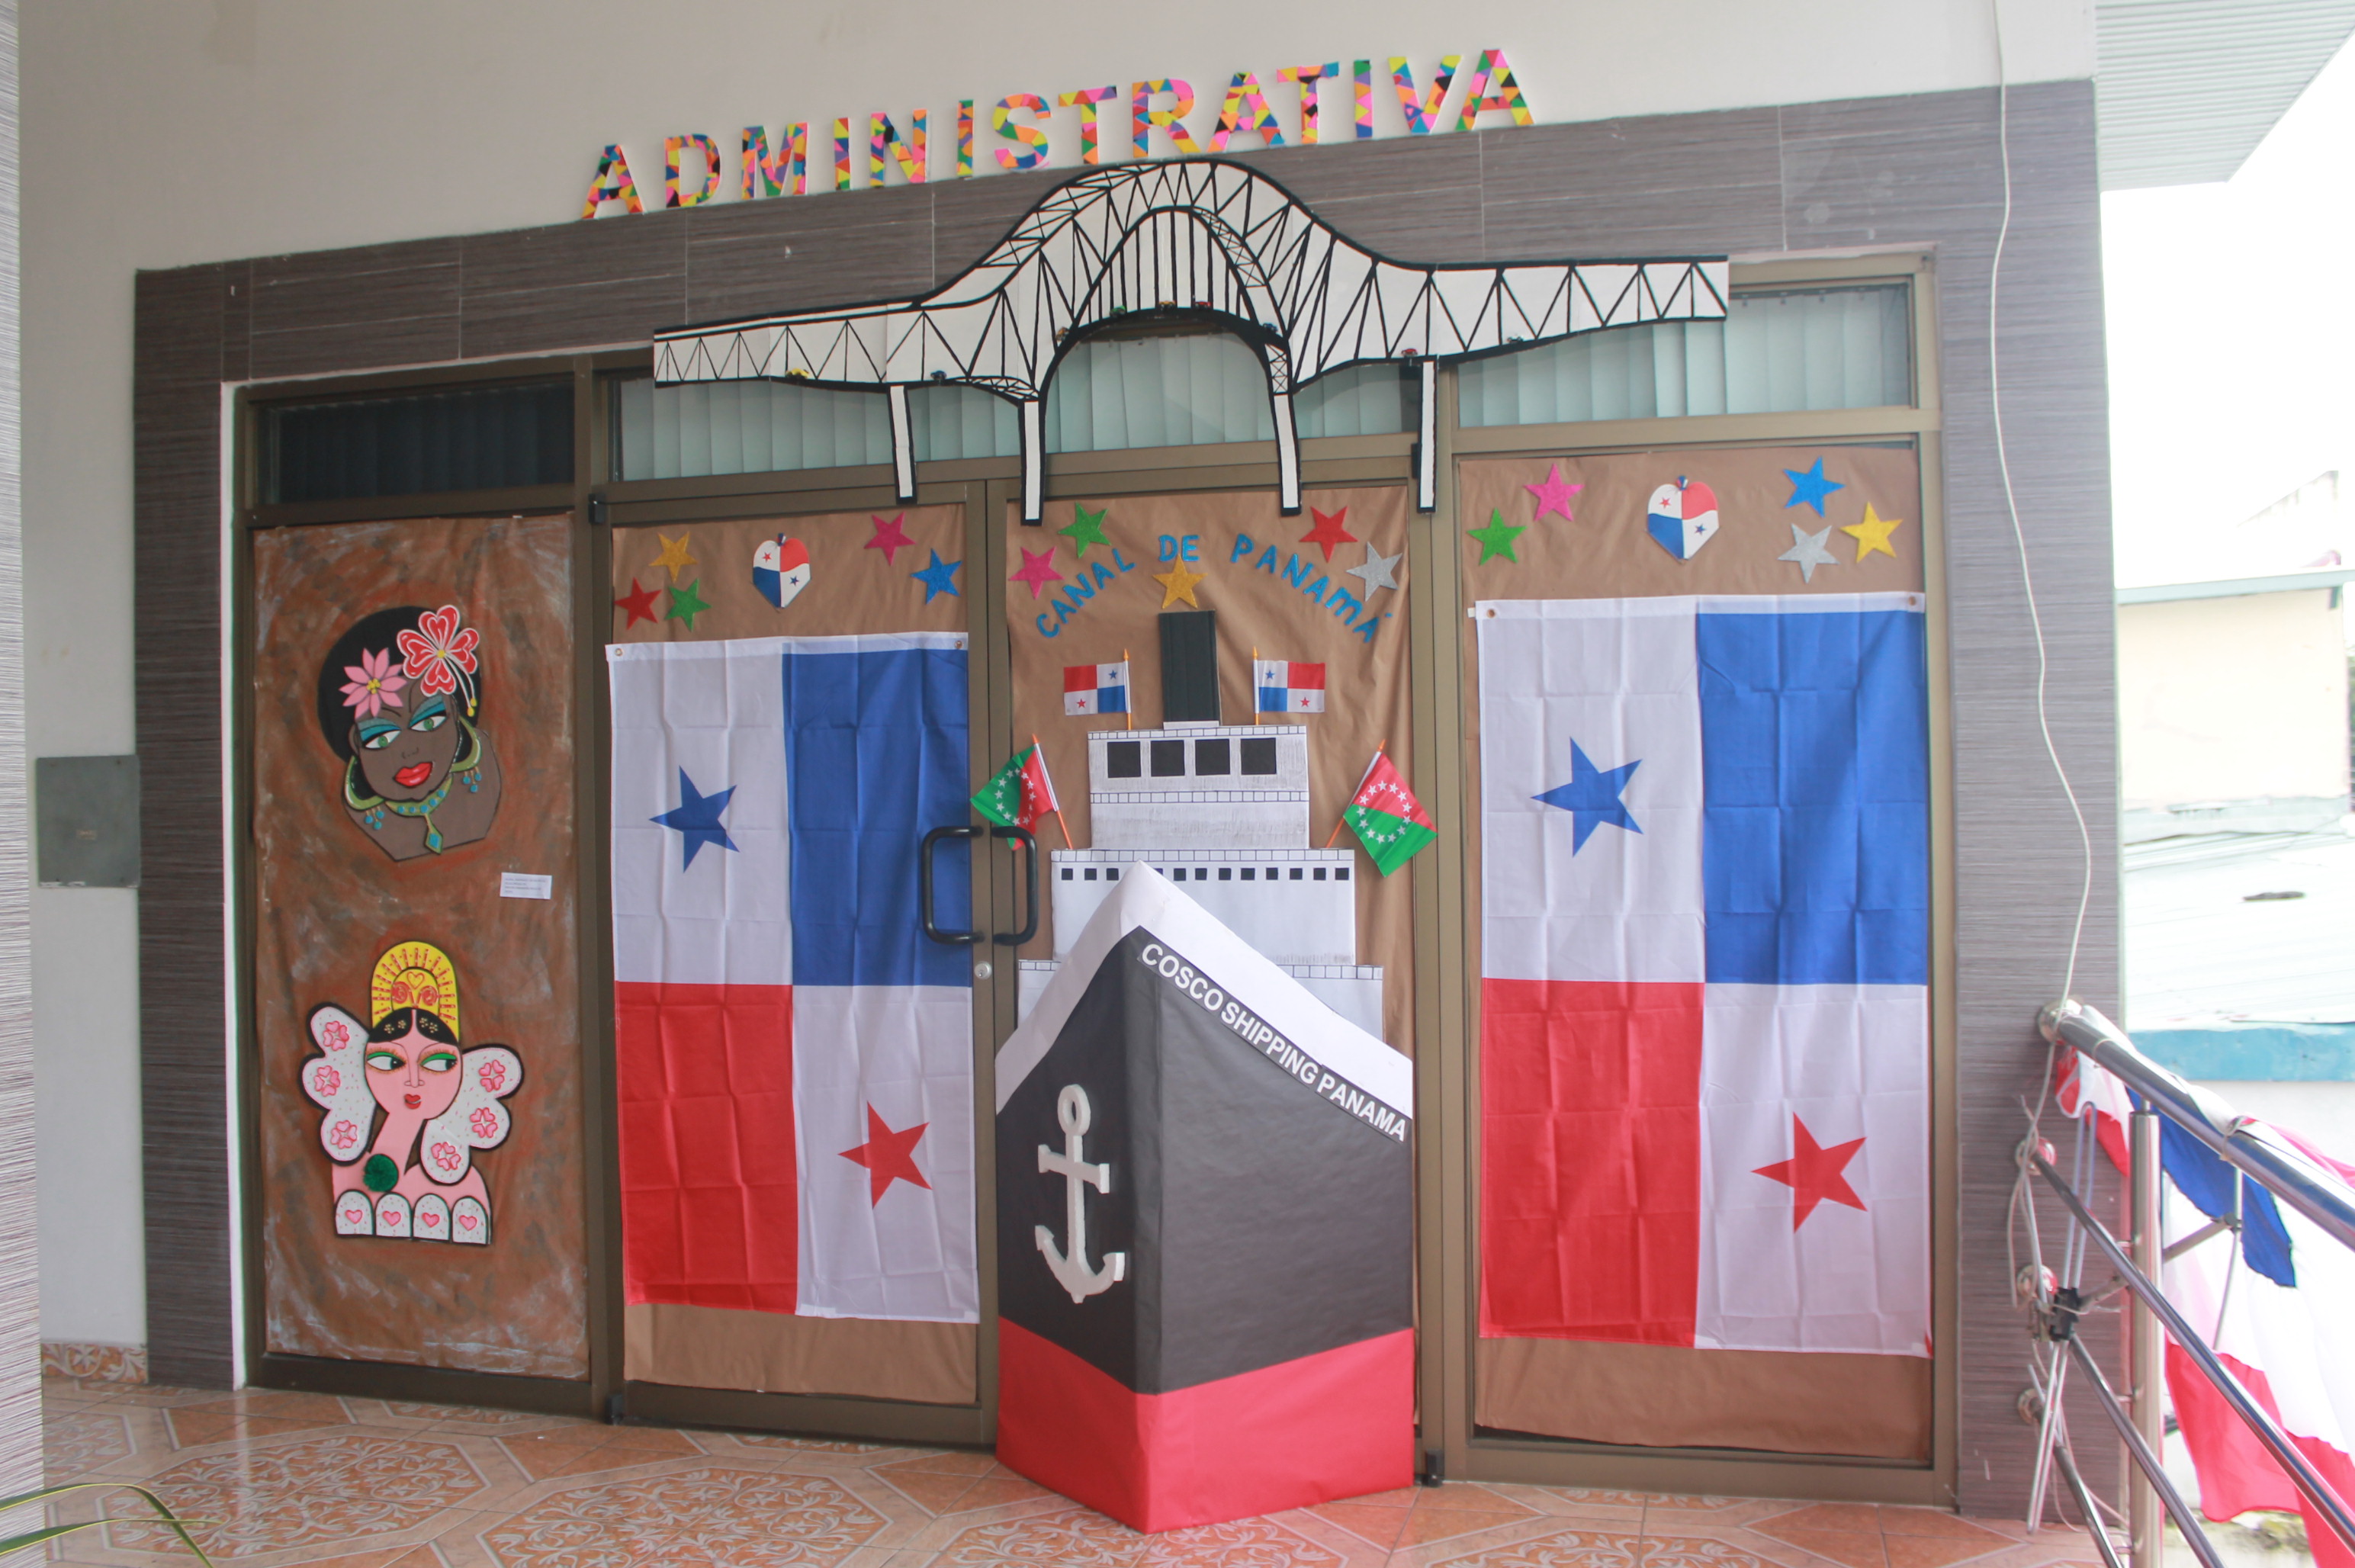 La Coordinación Regional de Recursos Humanos de Chiriquí conmemora por todo lo alto las festividades patrias,  con el concurso de decoración de puertas